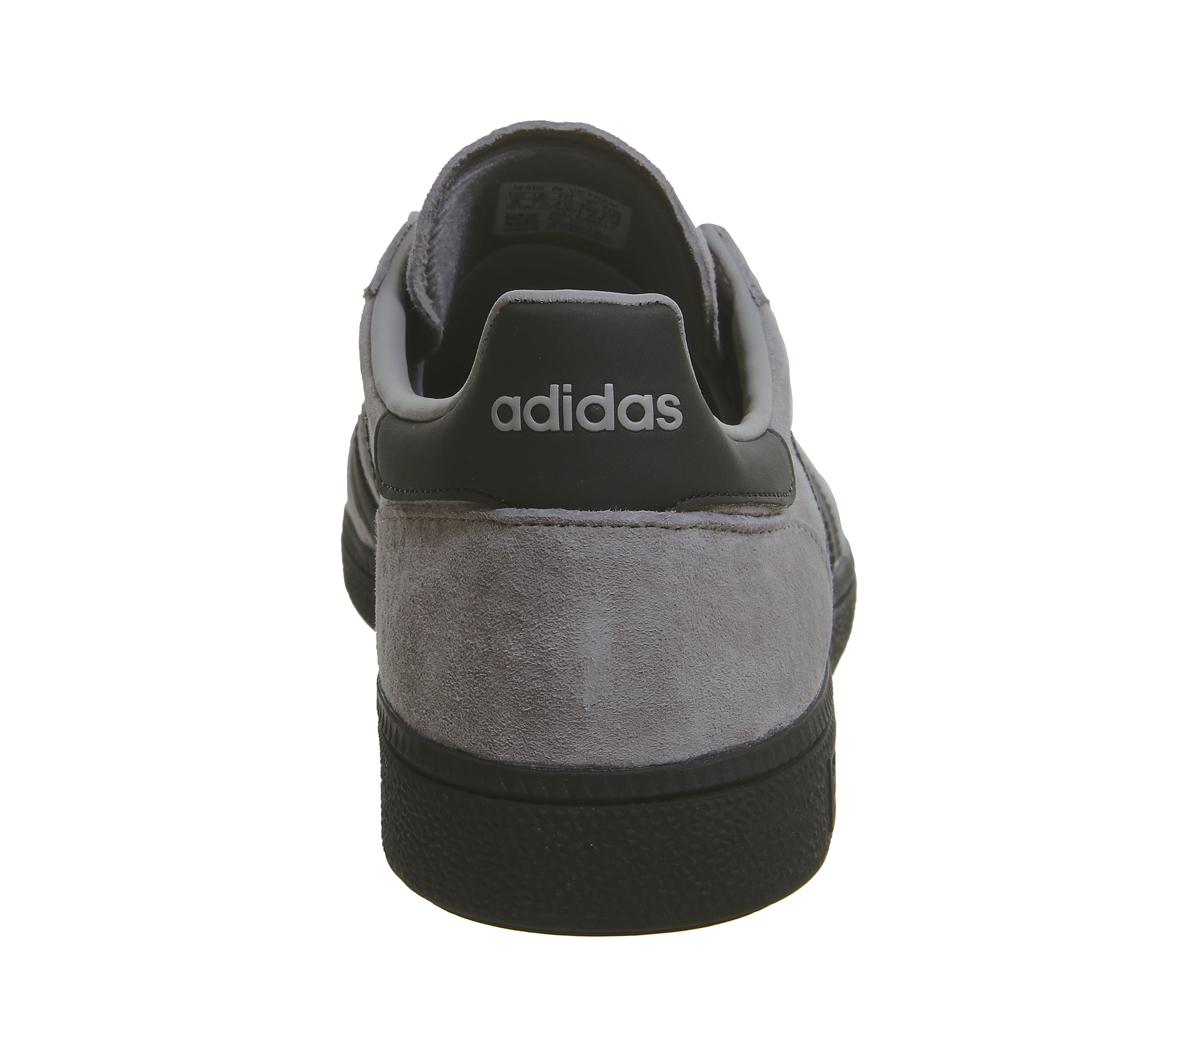 adidas handball spezial solid grey core black silver exclusive